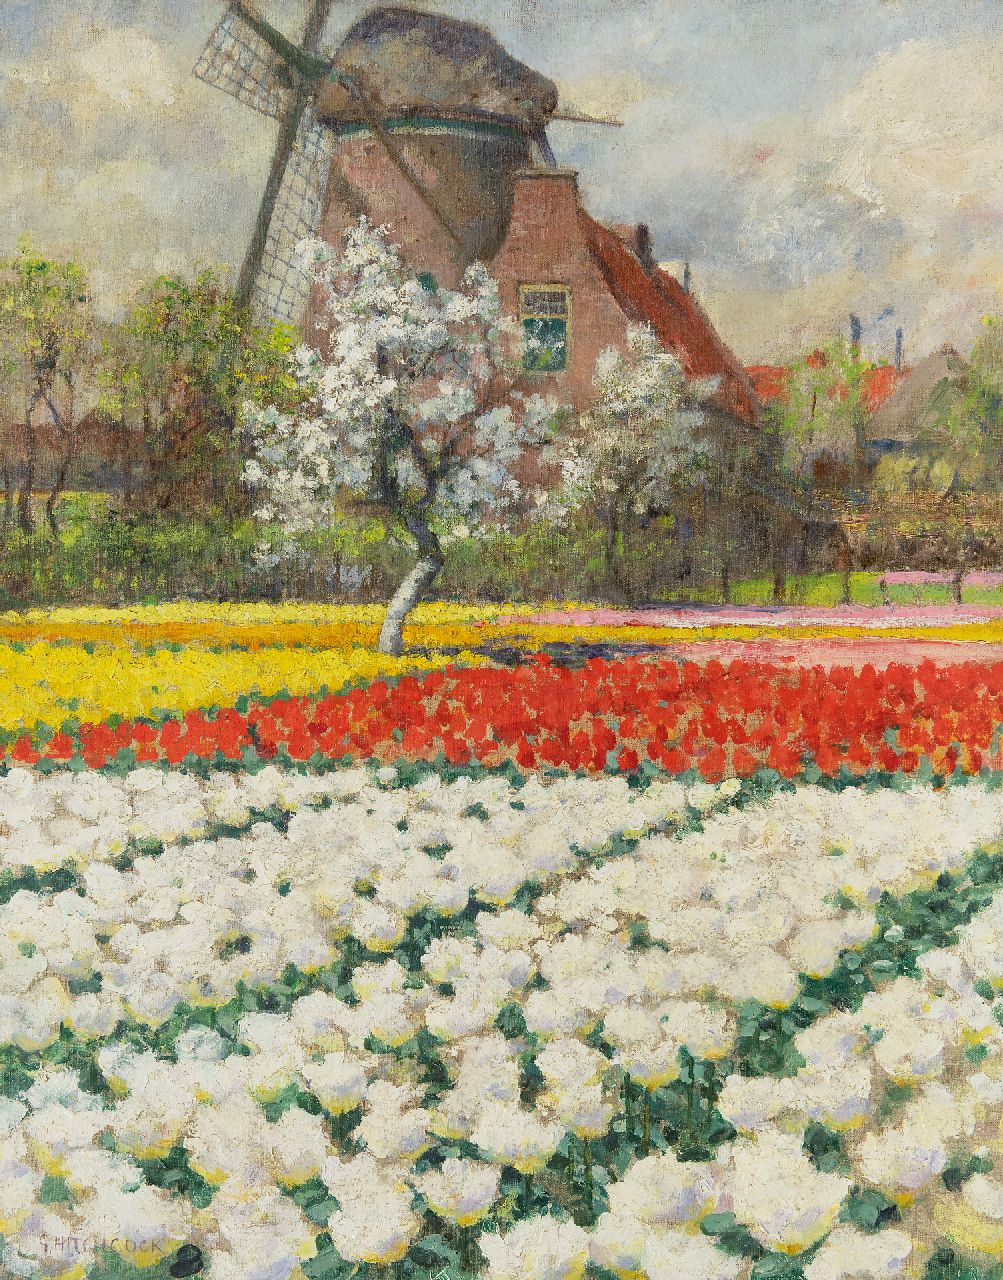 George Hitchcock | Double White Tulips, Egmond aan de Hoef, oil on canvas, 55.7 x 43.8 cm, signed l.l.